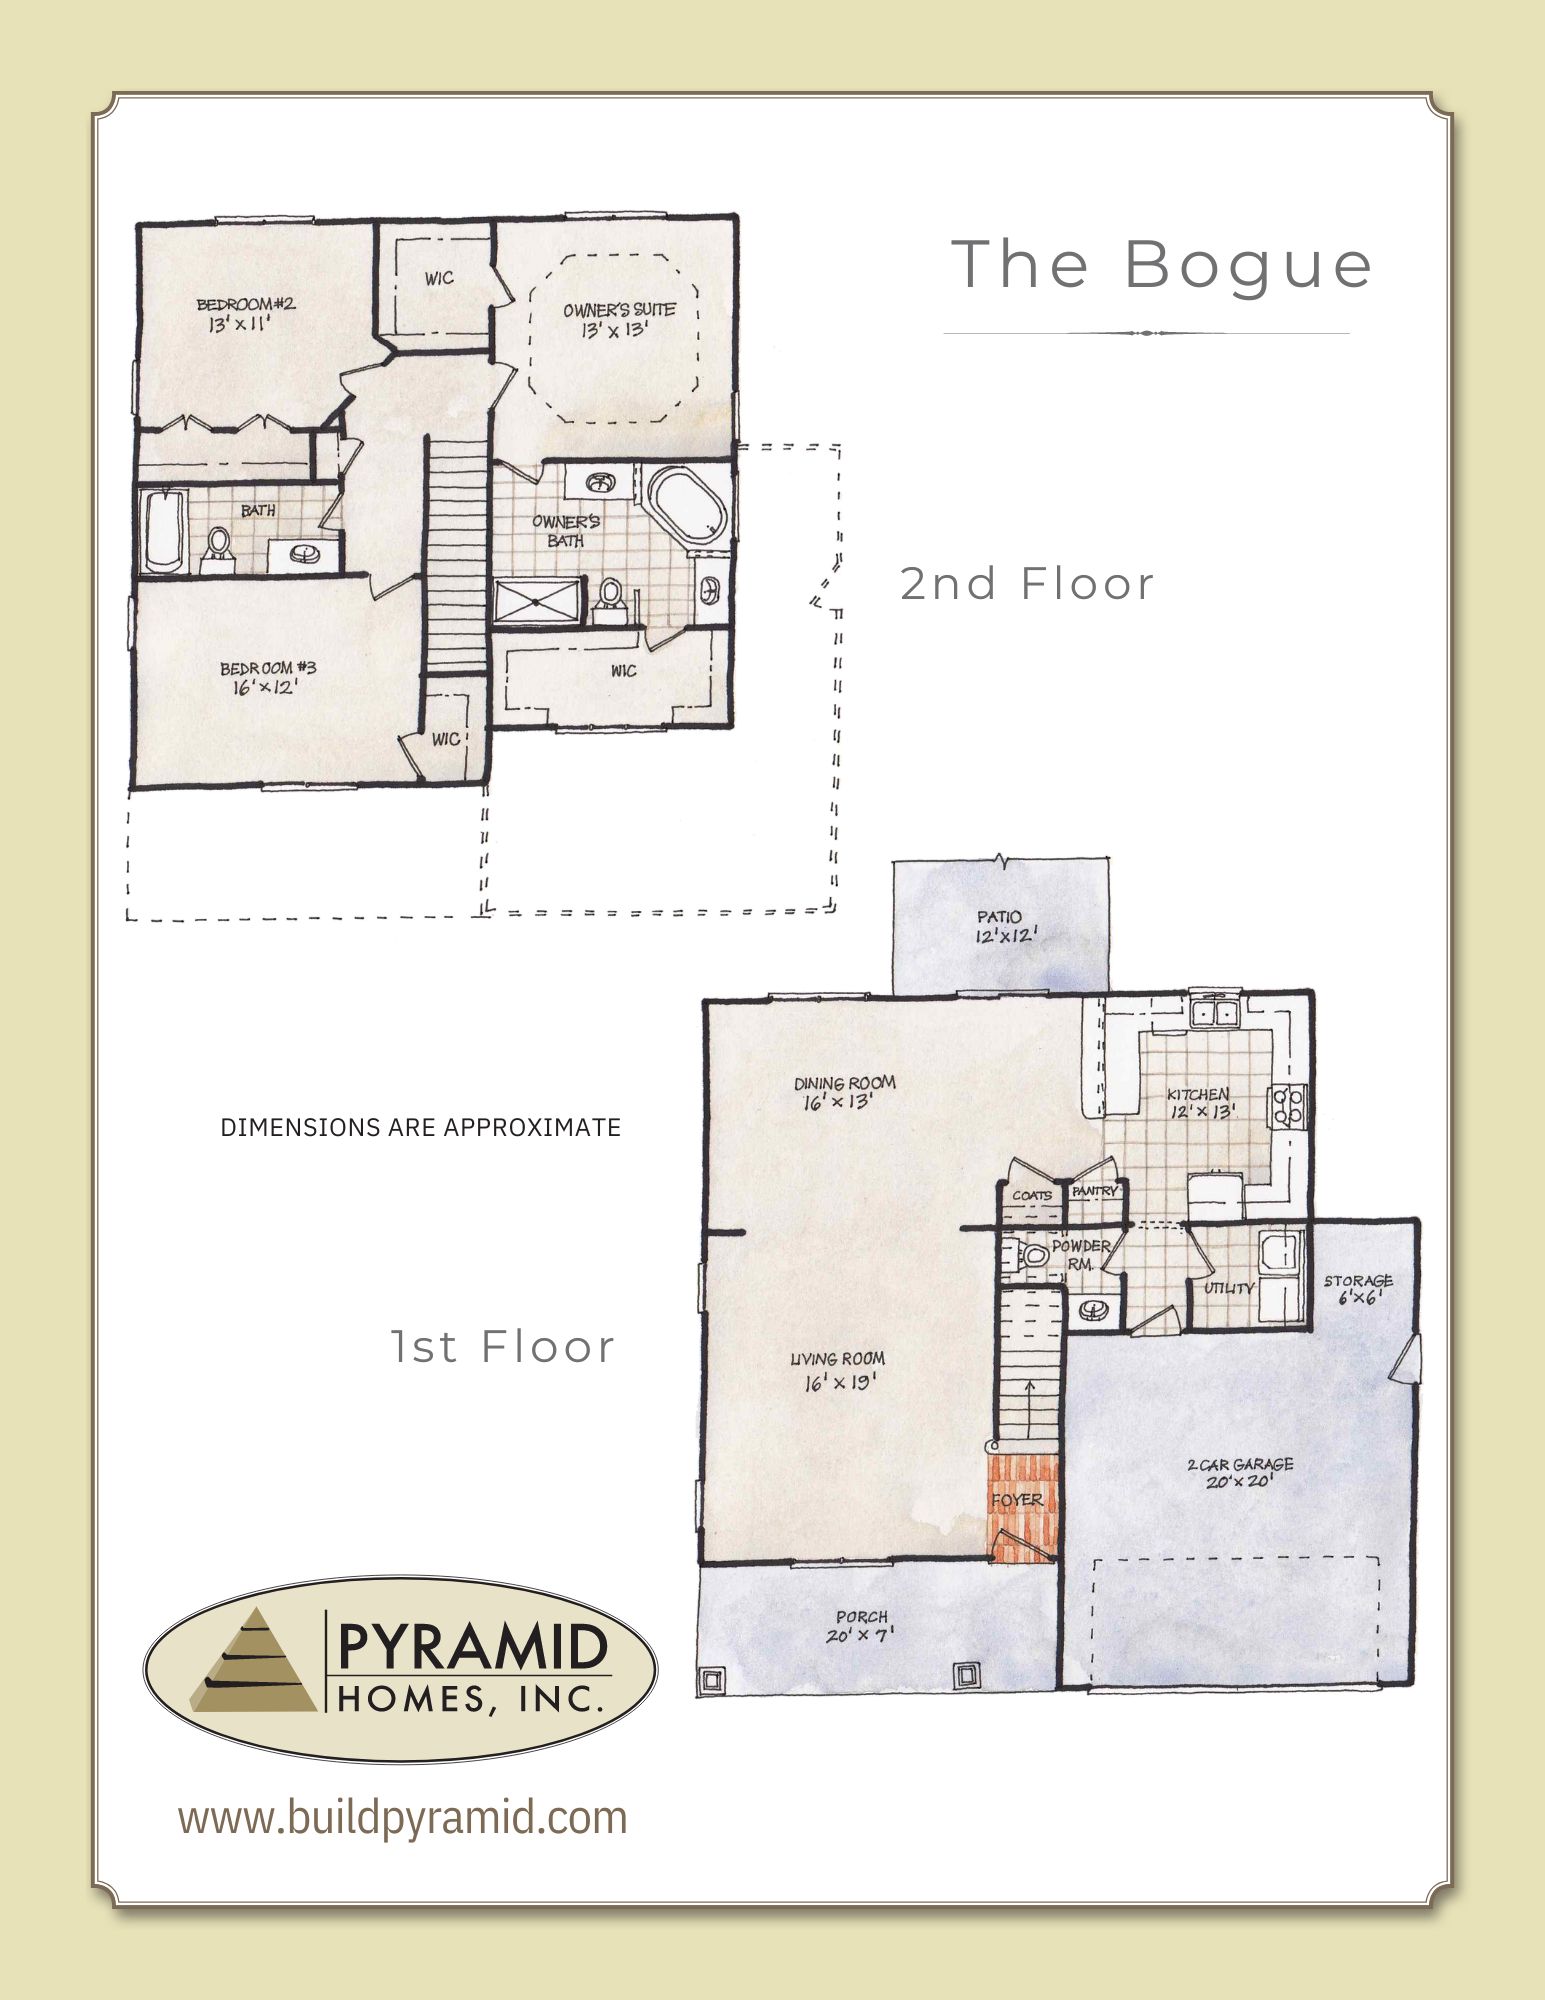 The Bogue floor plan image